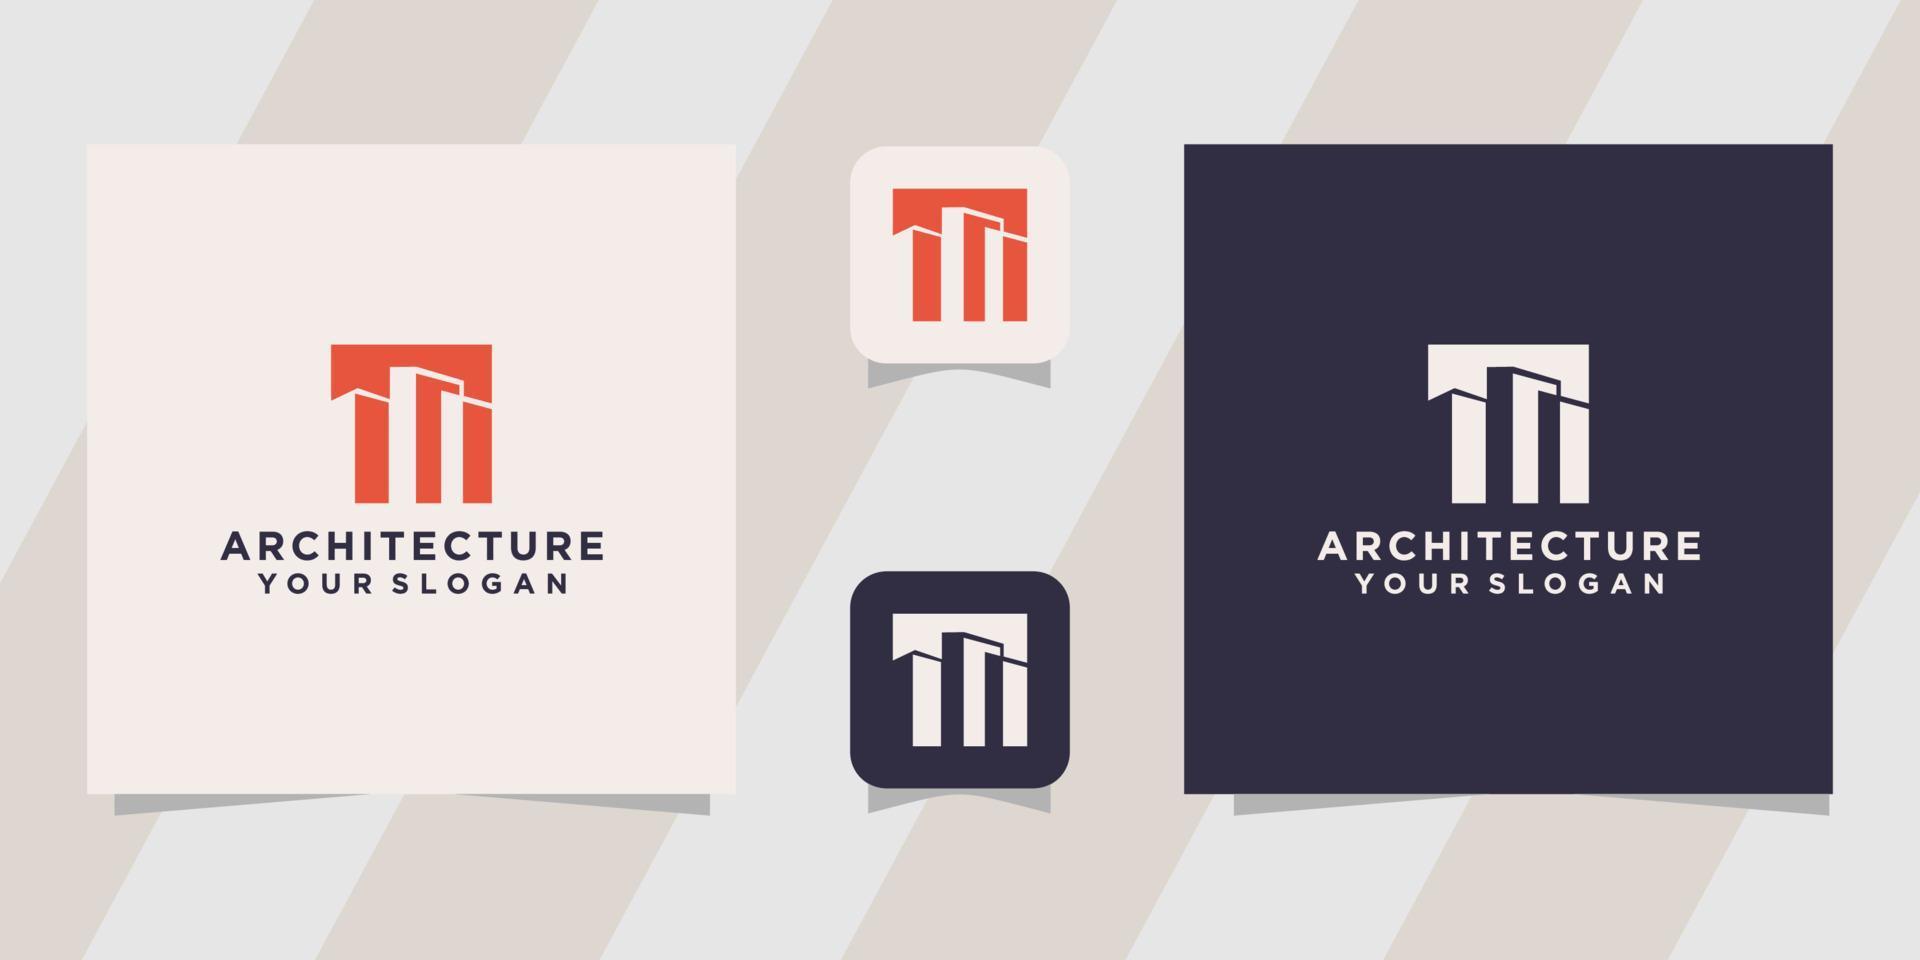 Architektur-Logo-Design-Vorlage vektor